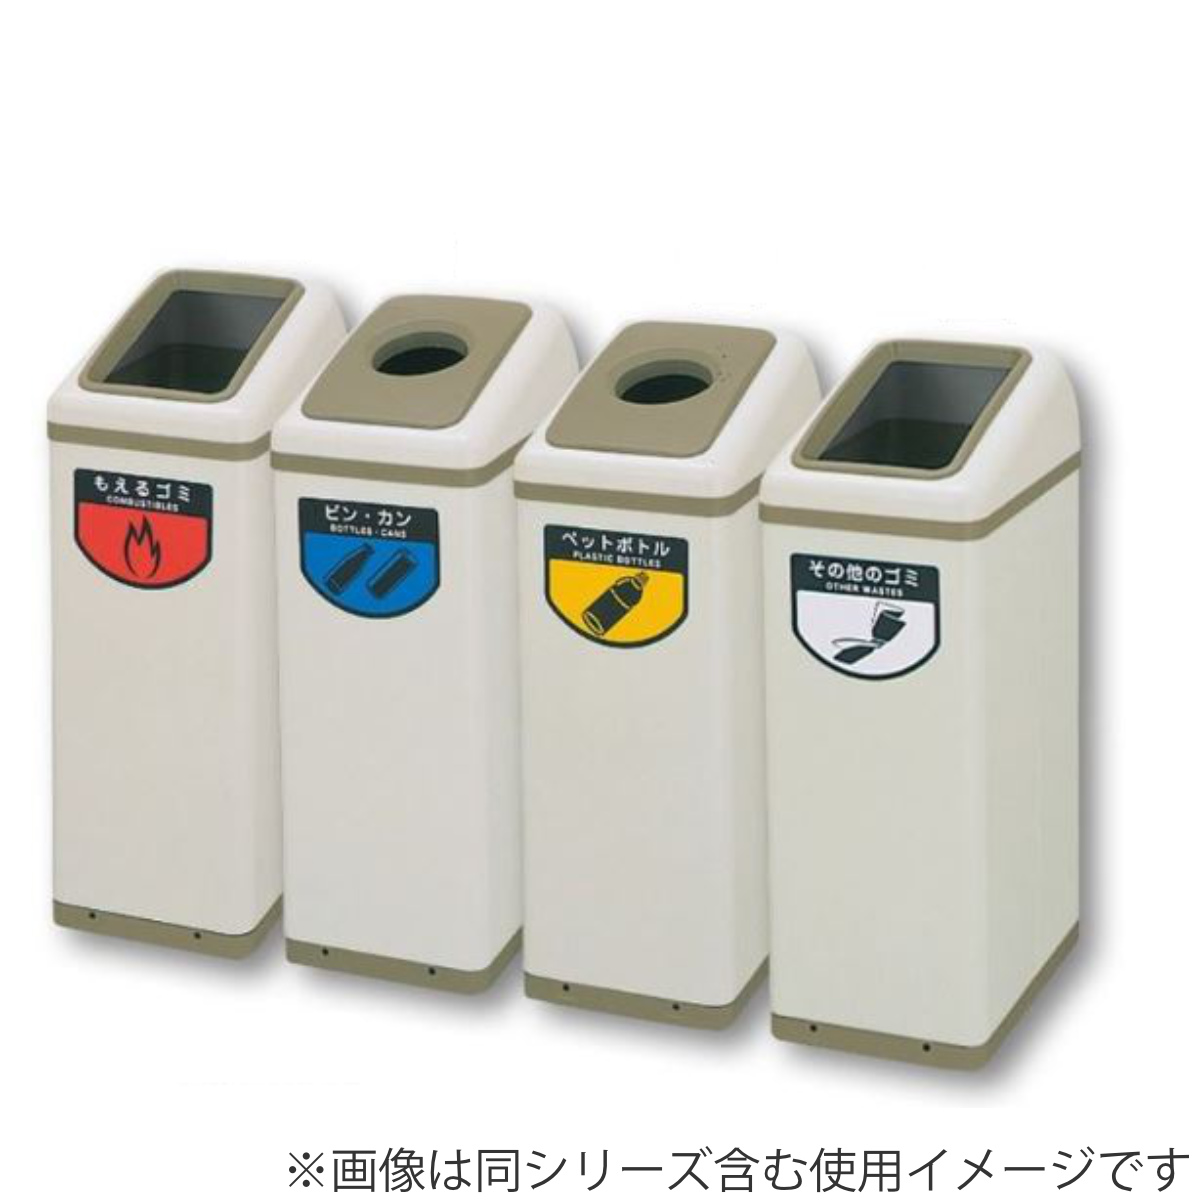 山崎産業 リサイクルボックス 大型ゴミ箱 2個セット-